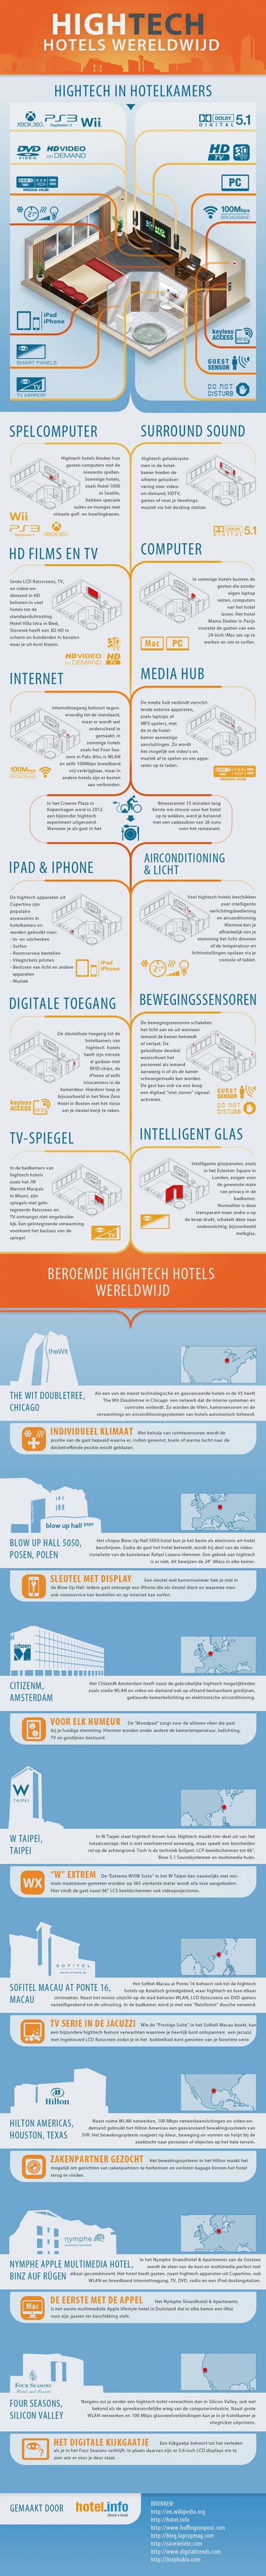 hightech-hotels-infographic.jpg